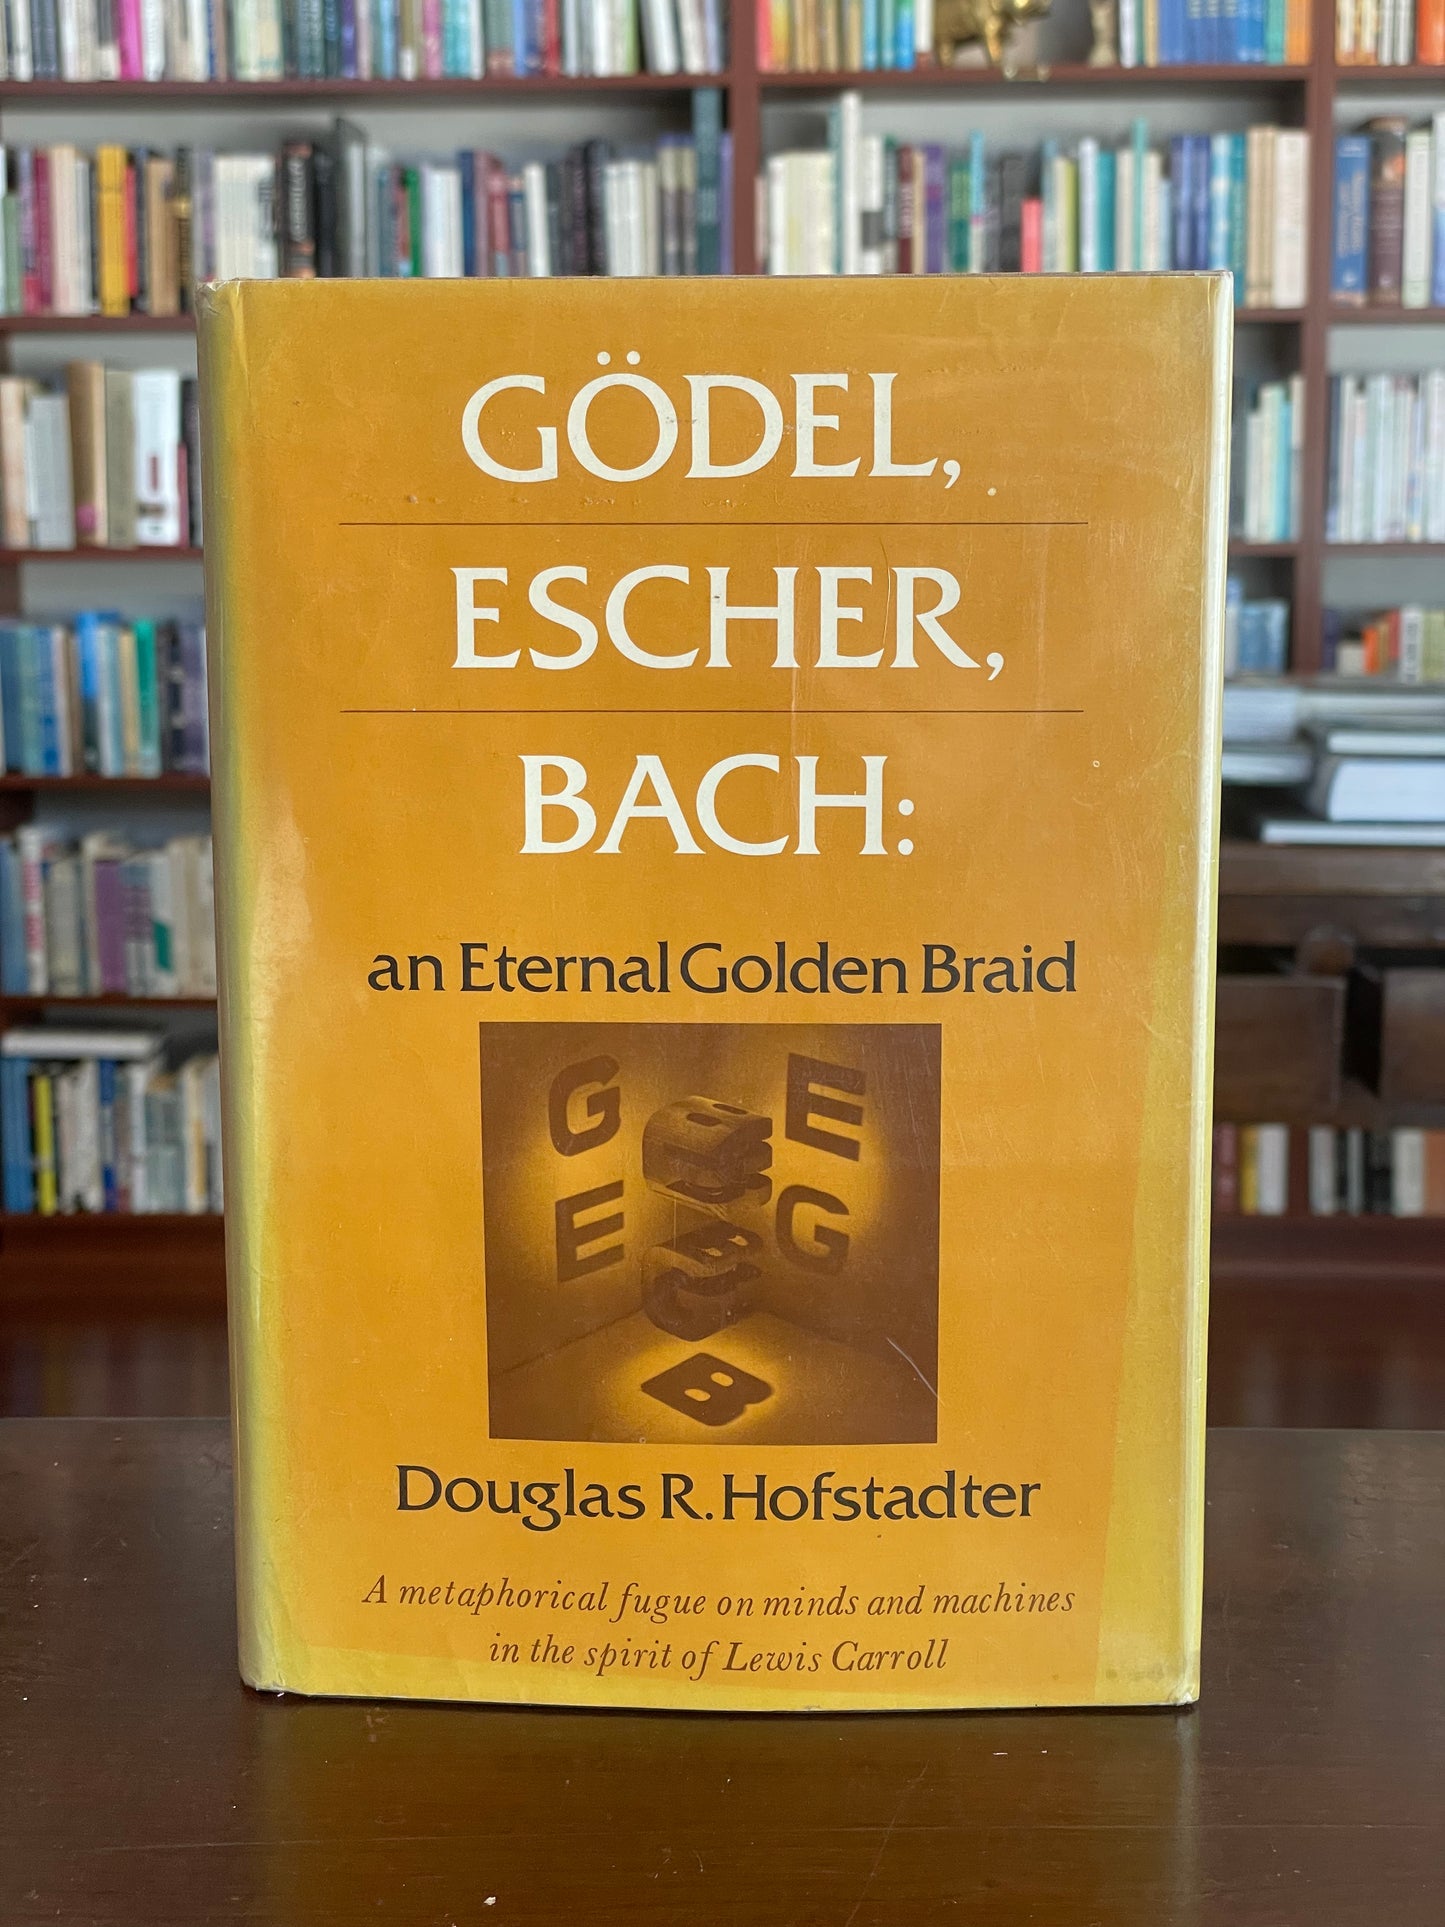 Gödel, Escher, Bach by Douglas Hofstadter (First Edition)